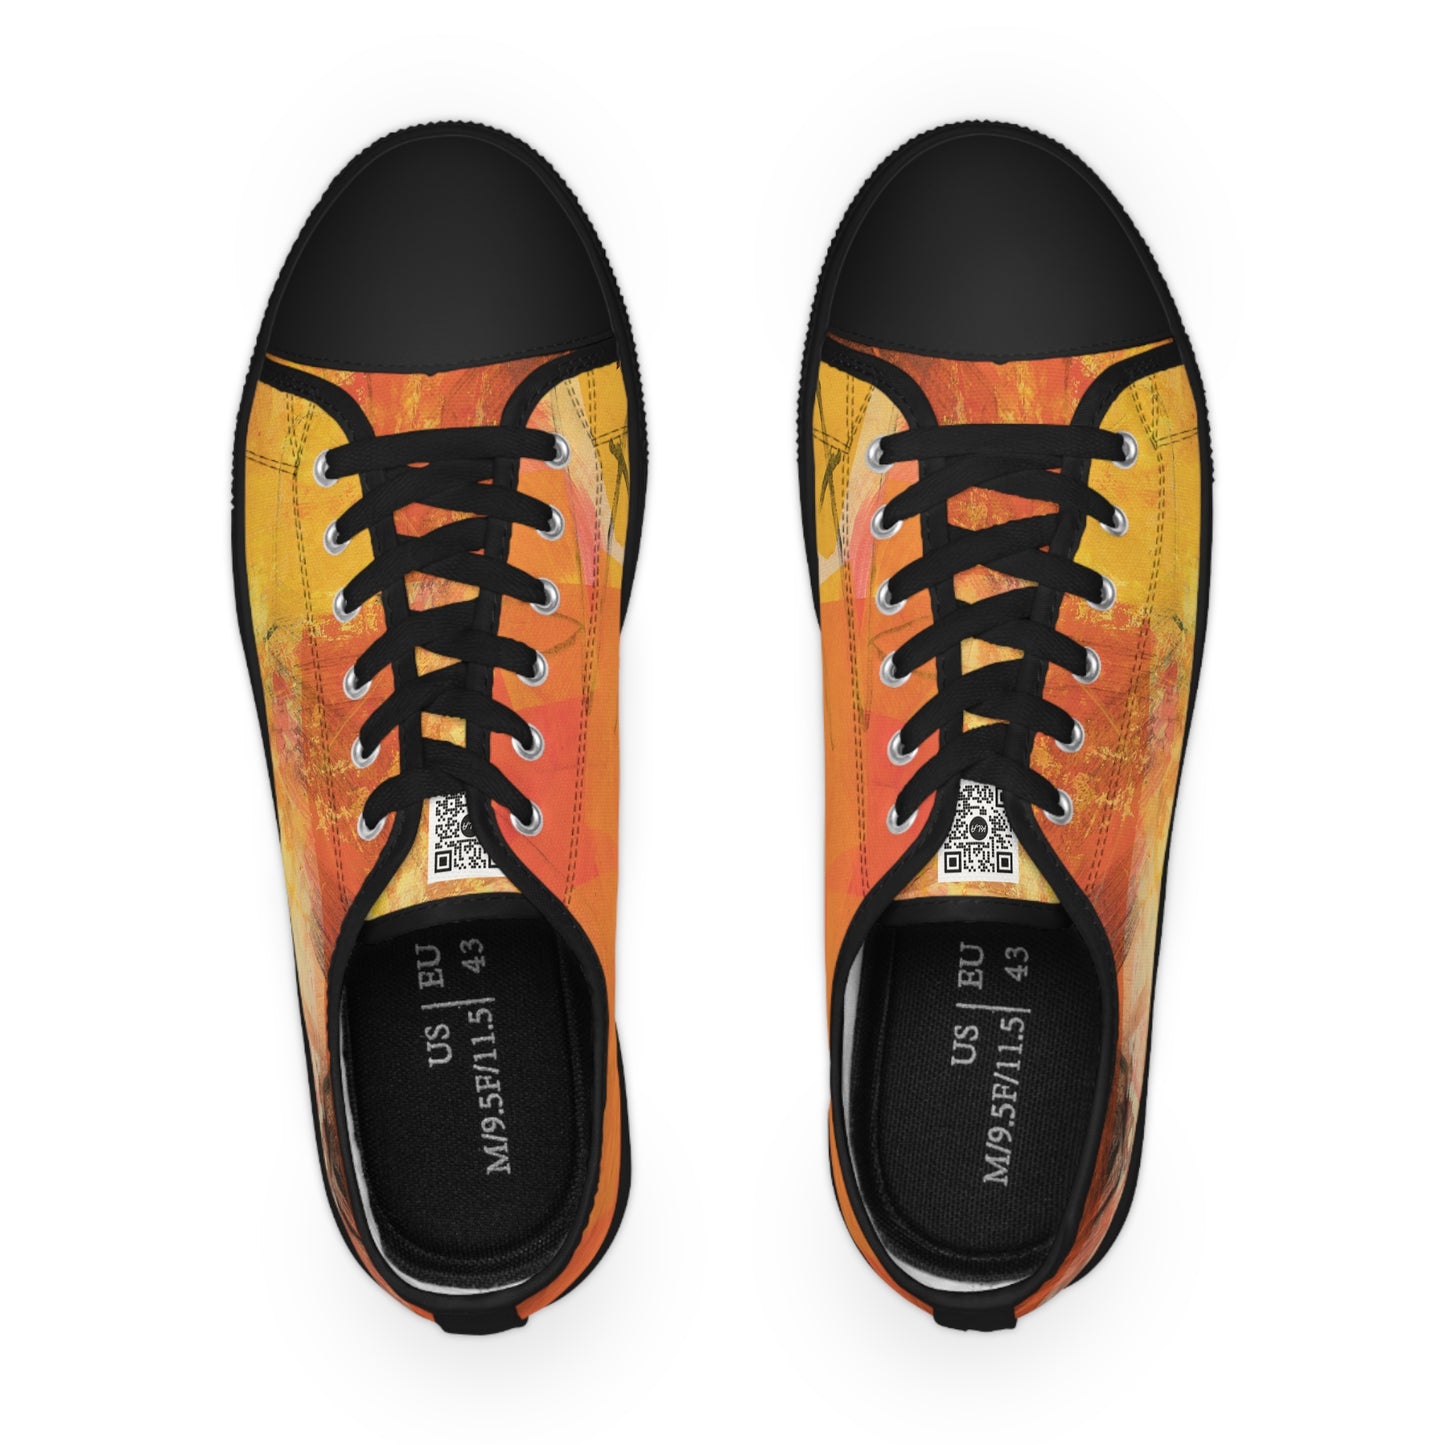 Men's Low Top Sneakers - 02875 US 14 Black sole